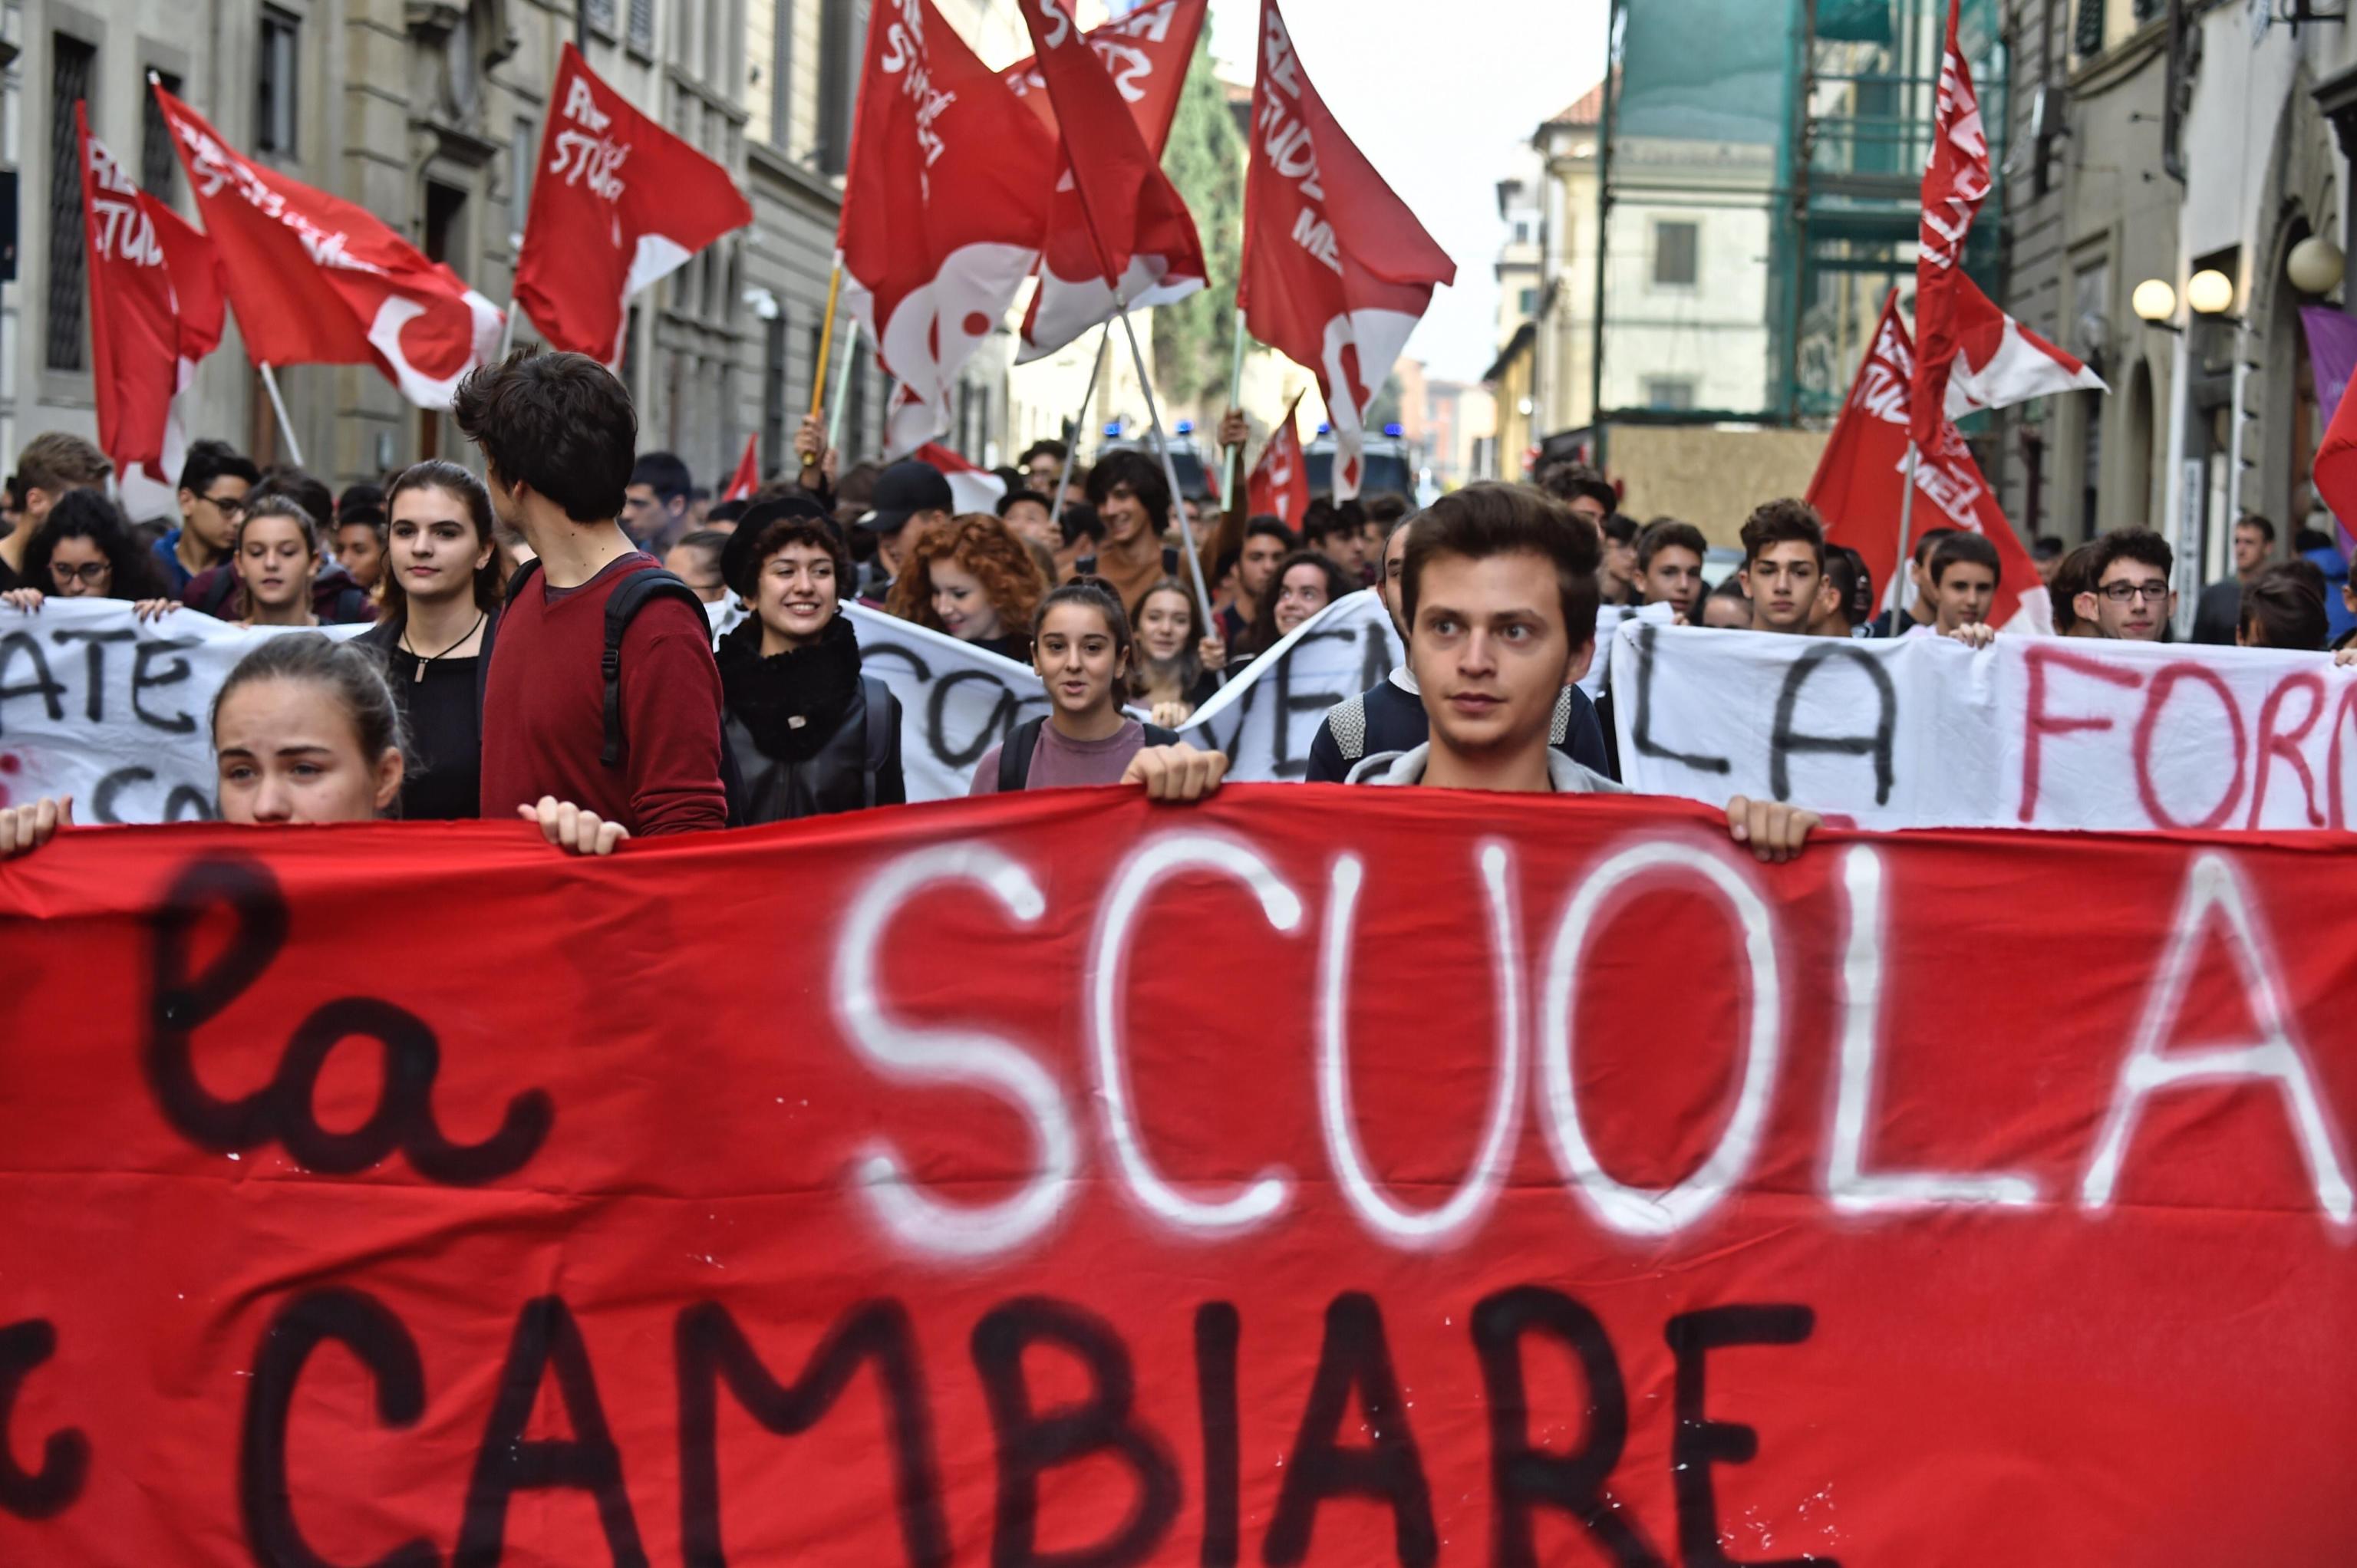 Corteo a Firenze. Striscioni e bandiere in alto contro l'alternanza scuola-lavoro